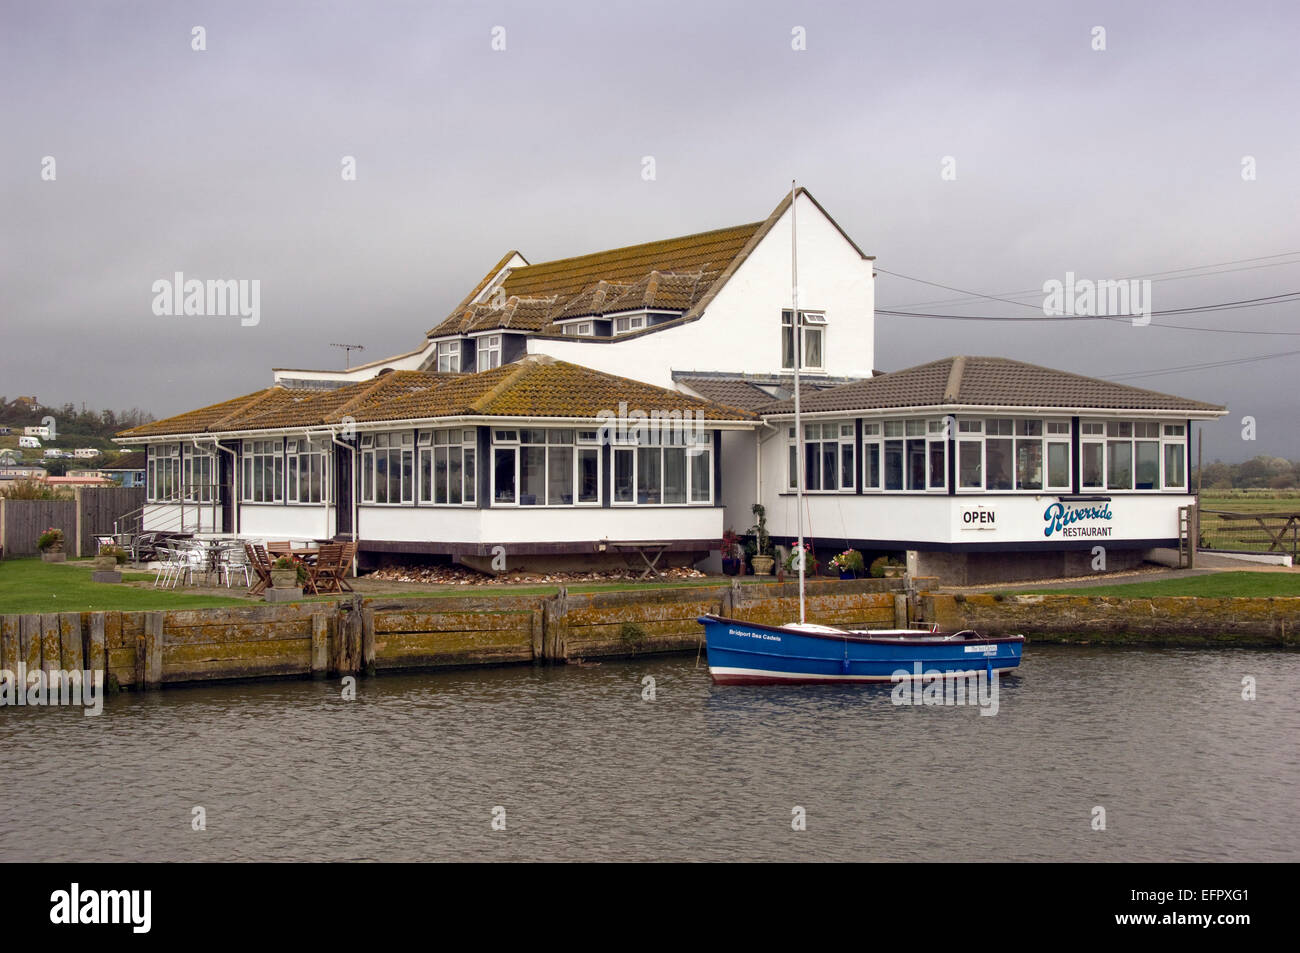 Riverside Restaurant, West Bay, Dorset, Großbritannien, das Lokal ist spezialisiert auf Meeresfrüchte gefangen. eine UK Restaurants Essen Fisch Meeresfrüchte Stockfoto